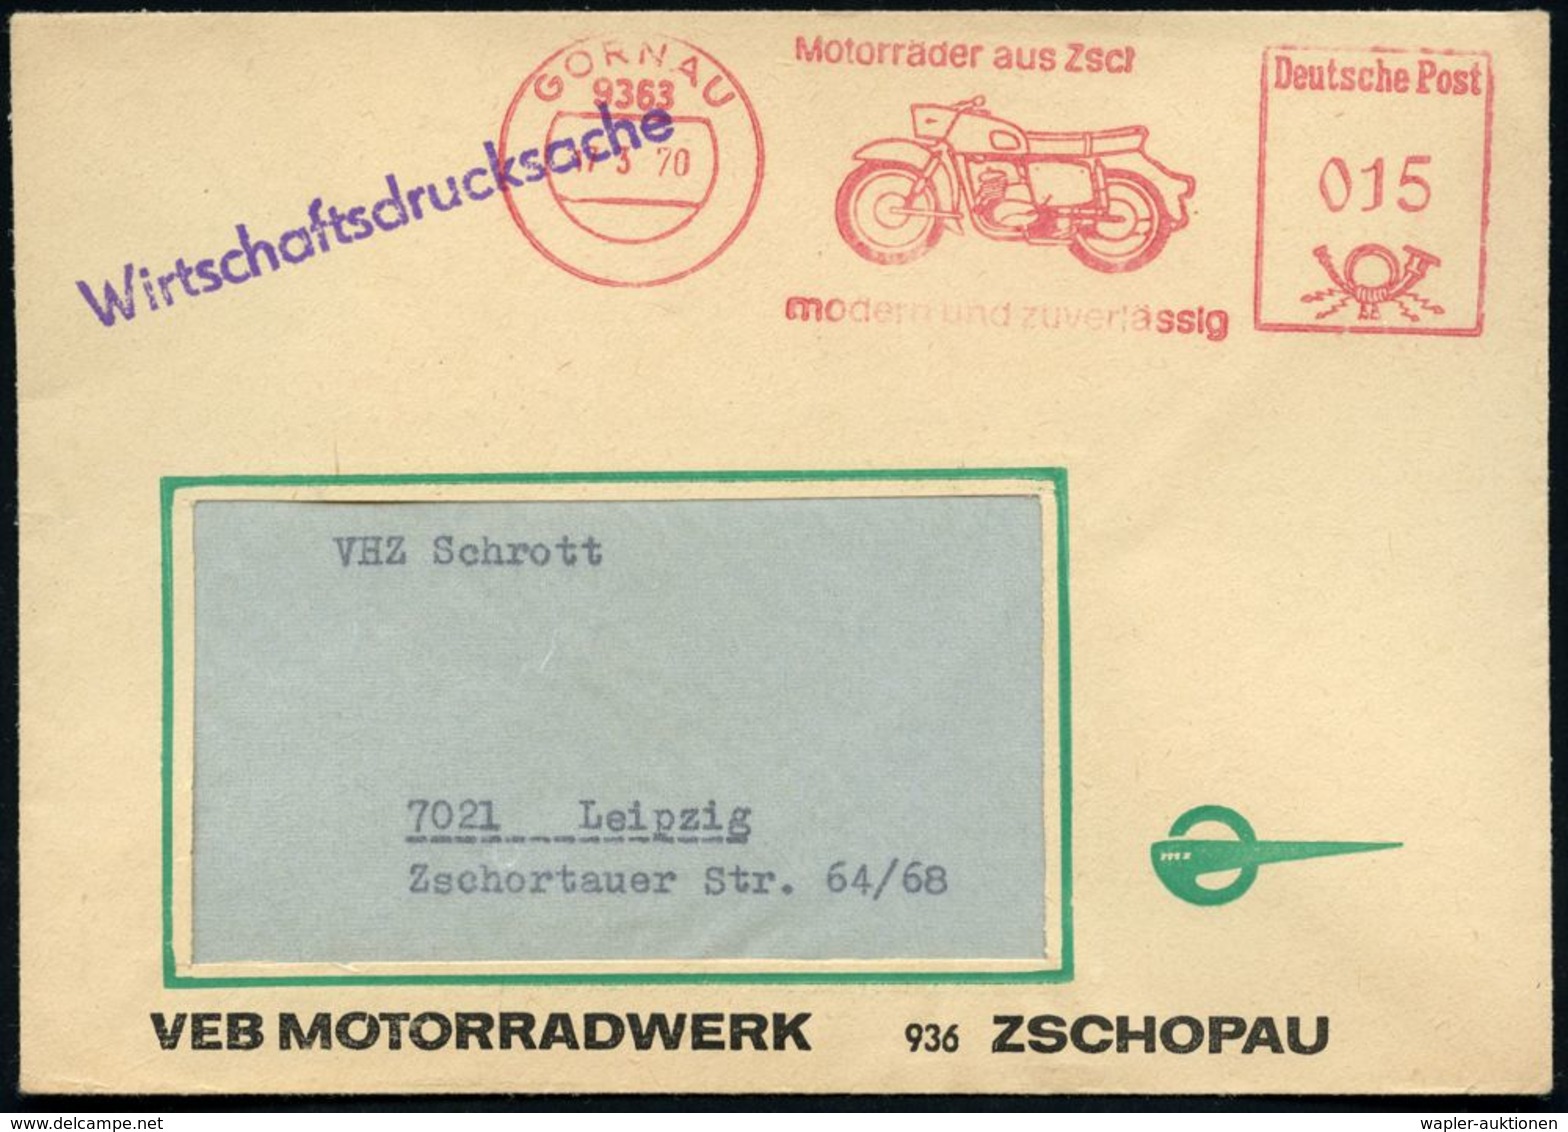 9363 GORNAU/ MZ-ERSATZTEILVERTRIEB 1970 (17.3.) AFS = Motorrad "M Z" , Klar Gest. Inl.-Firmen-Bf. Mit Firmen-Logo, Schön - Motos